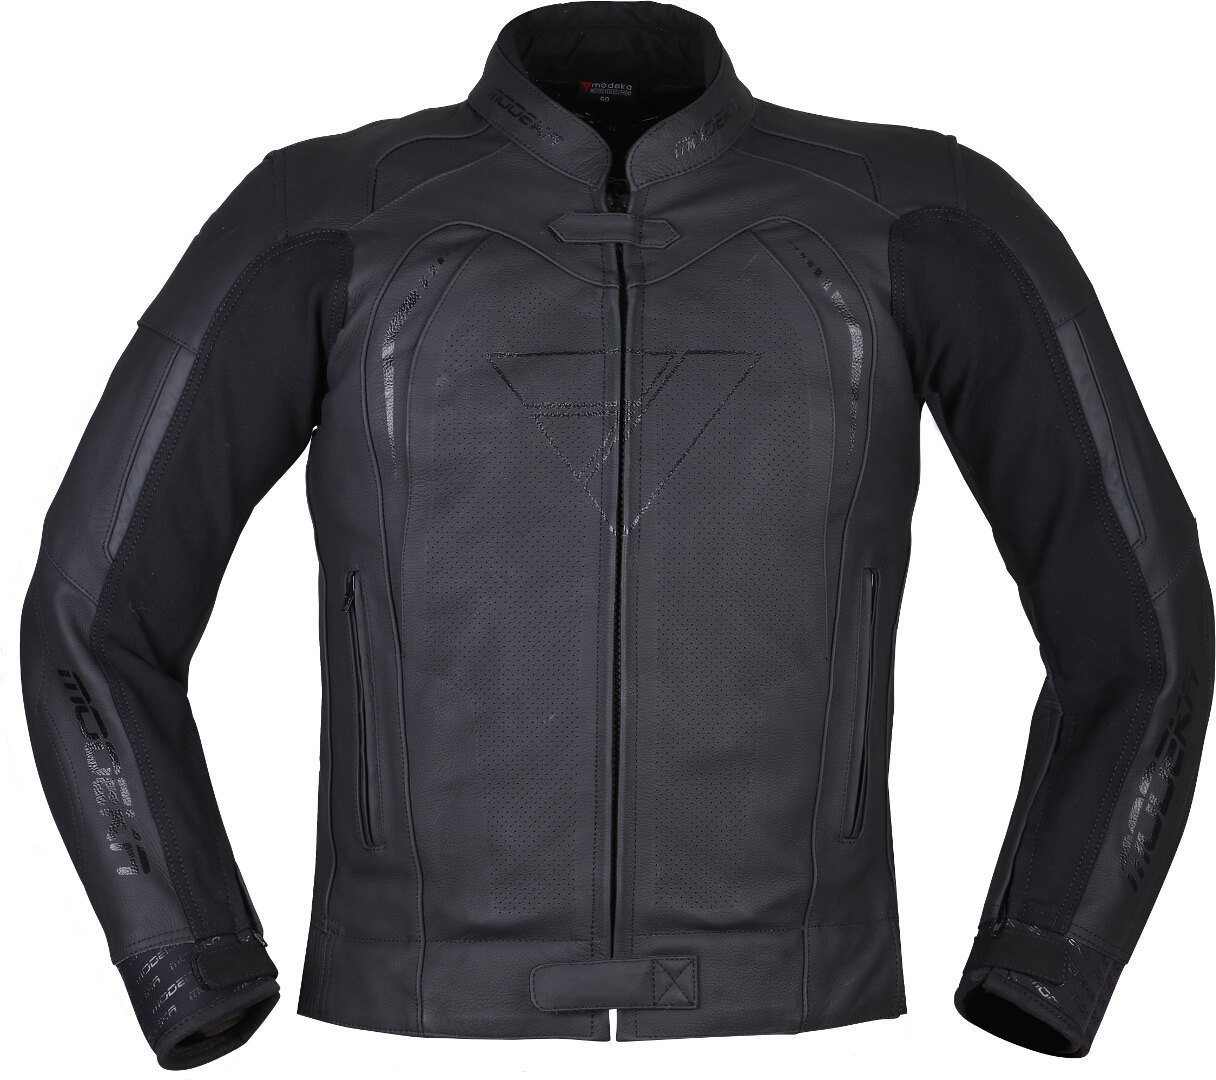 Modeka Minos Motorcycle Leather Jacket, black, Size 54, black, Size 54